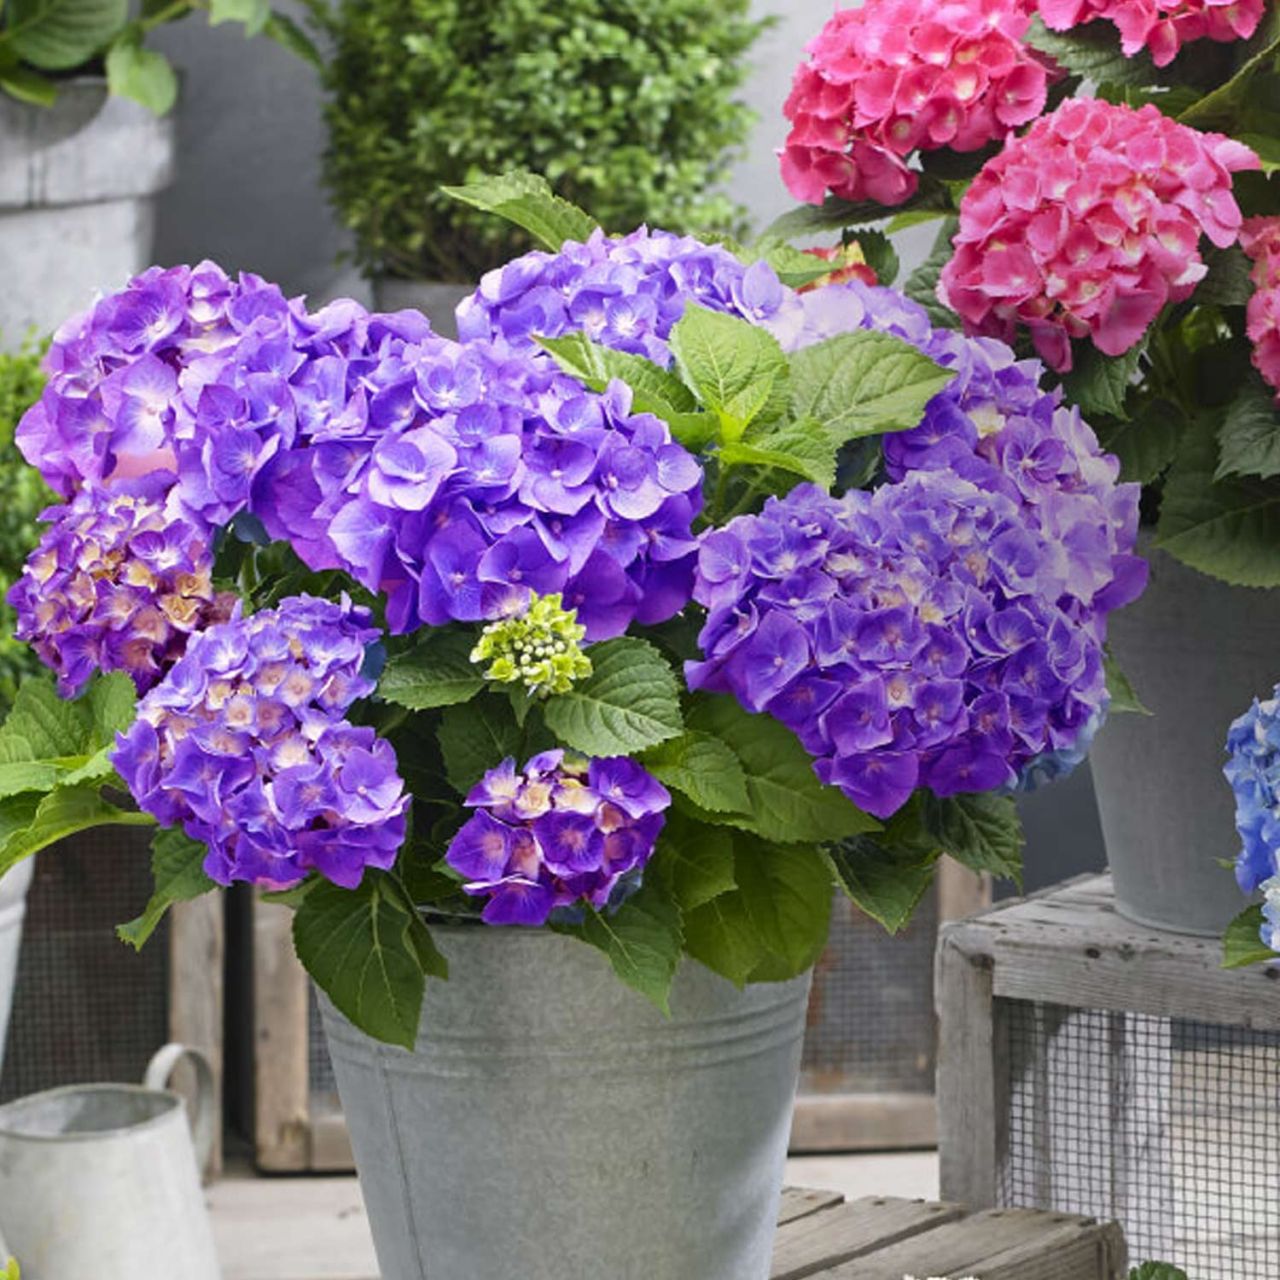 Kategorie <b>Blütensträucher und Ziergehölze </b> - Zwerg-Hortensie 'Little Purple'® - Hydrangea macrophylla 'Little Purple'®